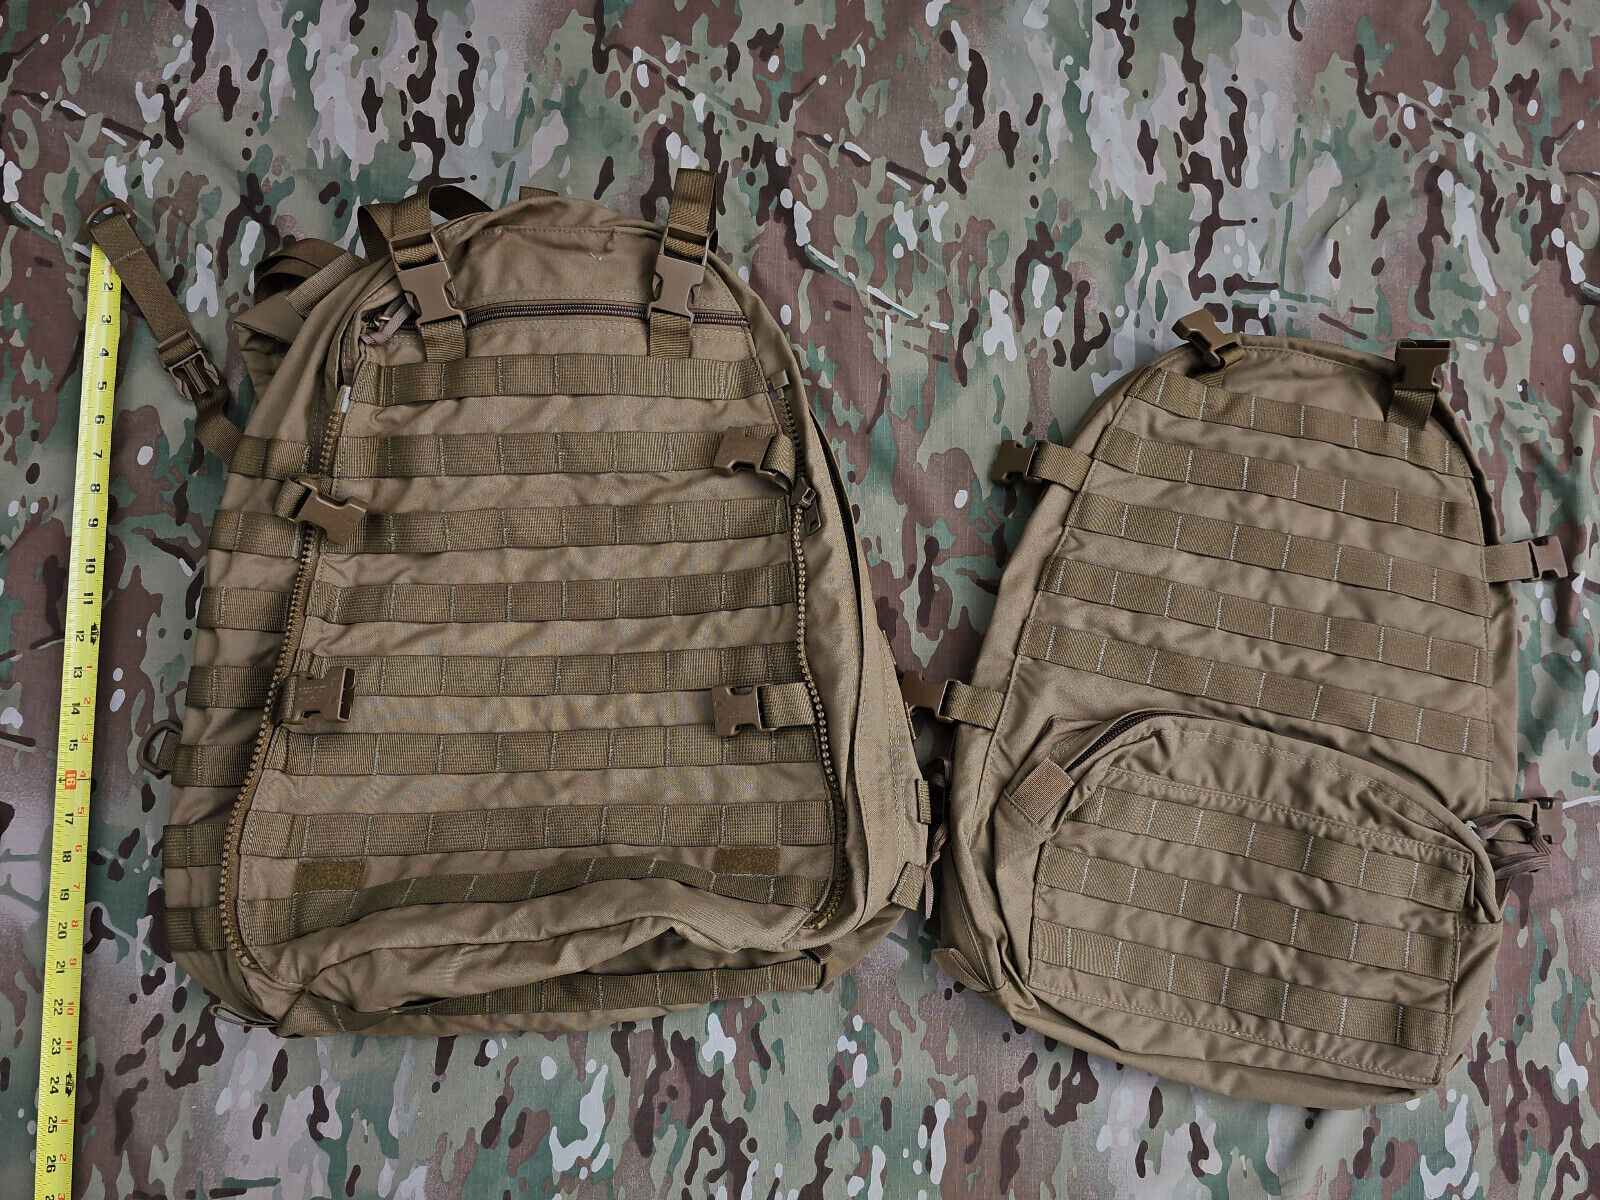 LBT Bellum Designs Tidewater Tactical Assault Pack Backpack 2 packs AOR1 SEALS